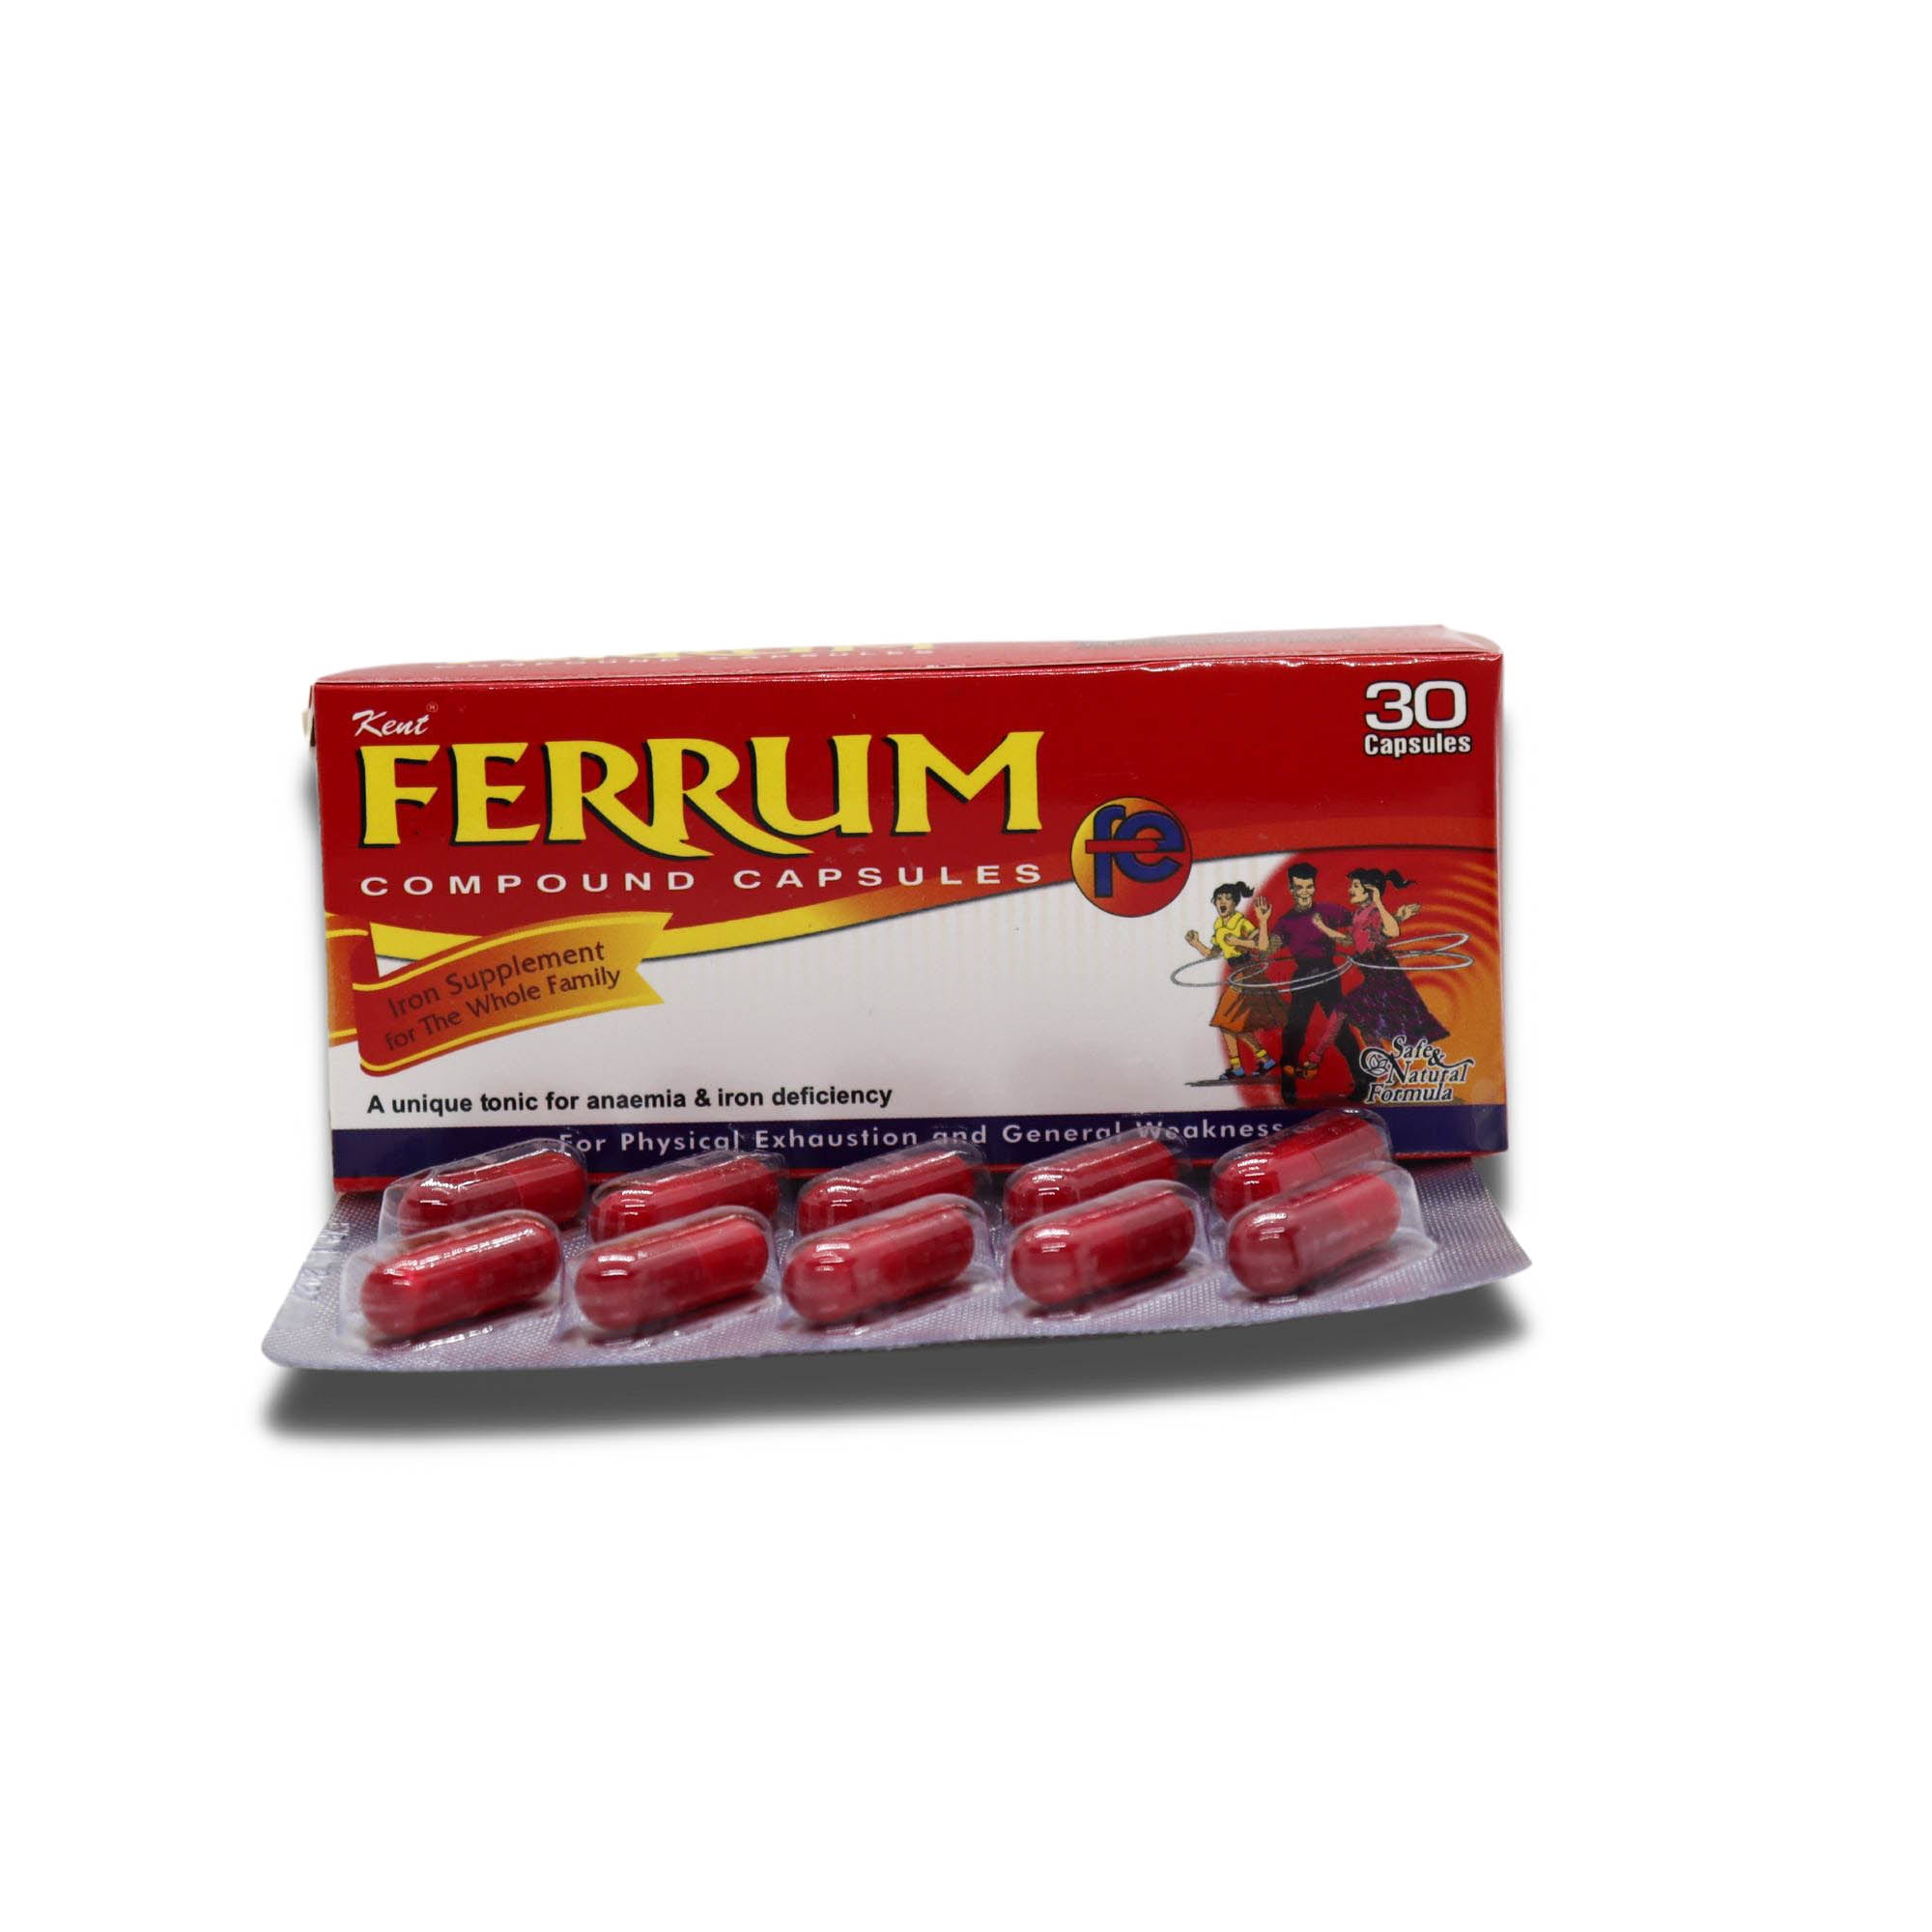 Ferrum Compound Syrup